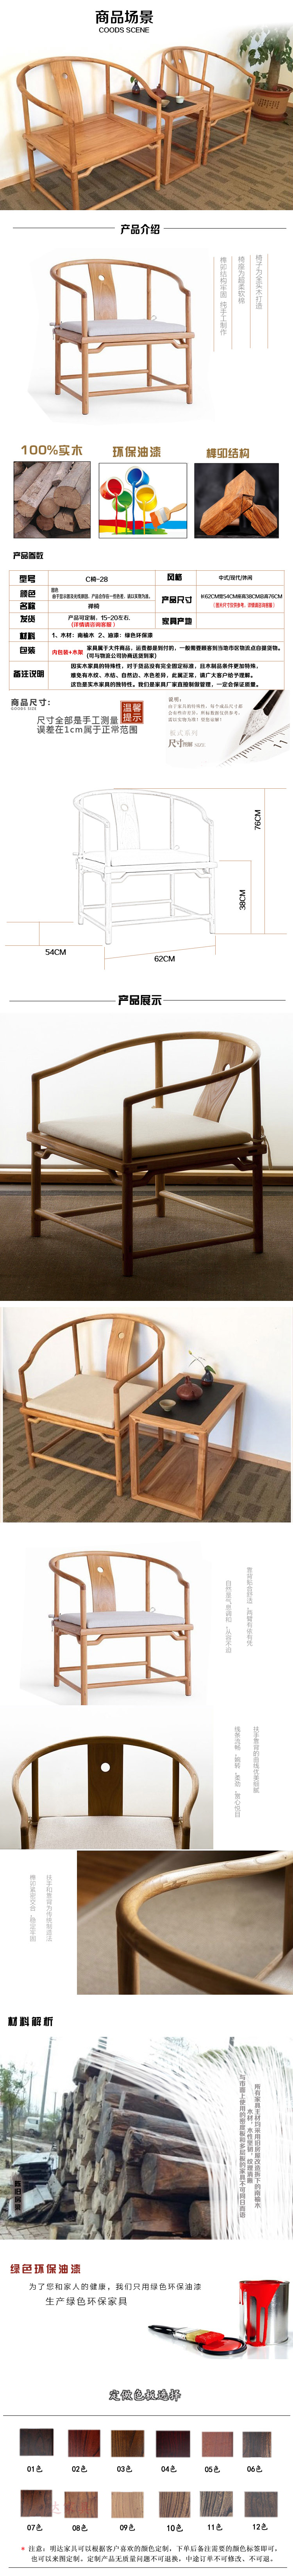 淘宝实木家具详情页面设计 实木椅子套装